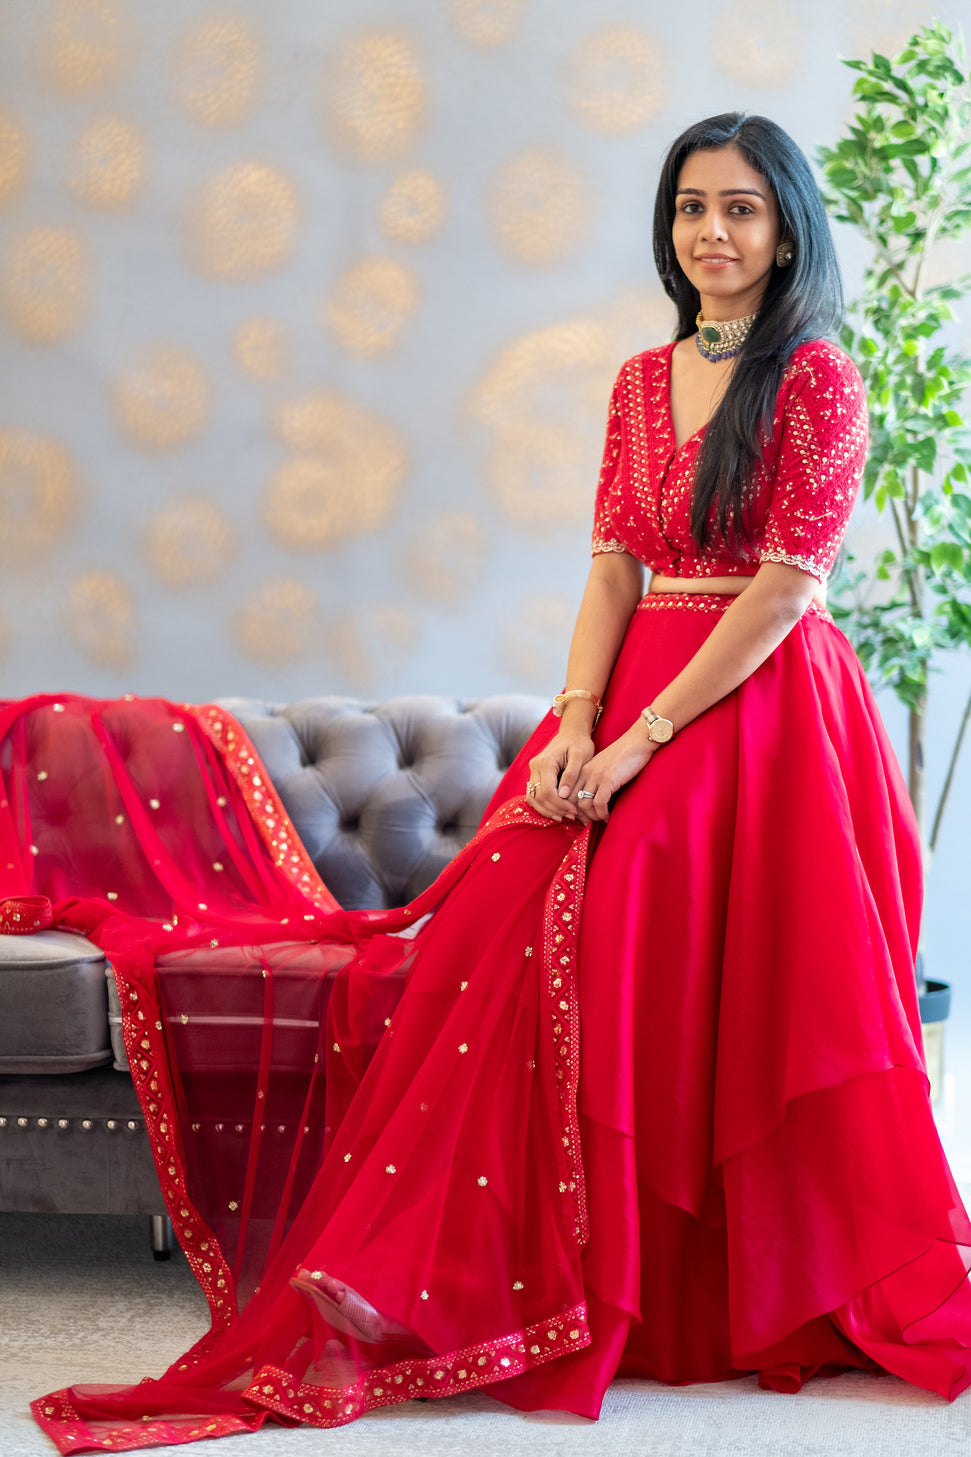 Red Chikankarri croptop with organza layered skirt and dupatta with chikankari detailed border